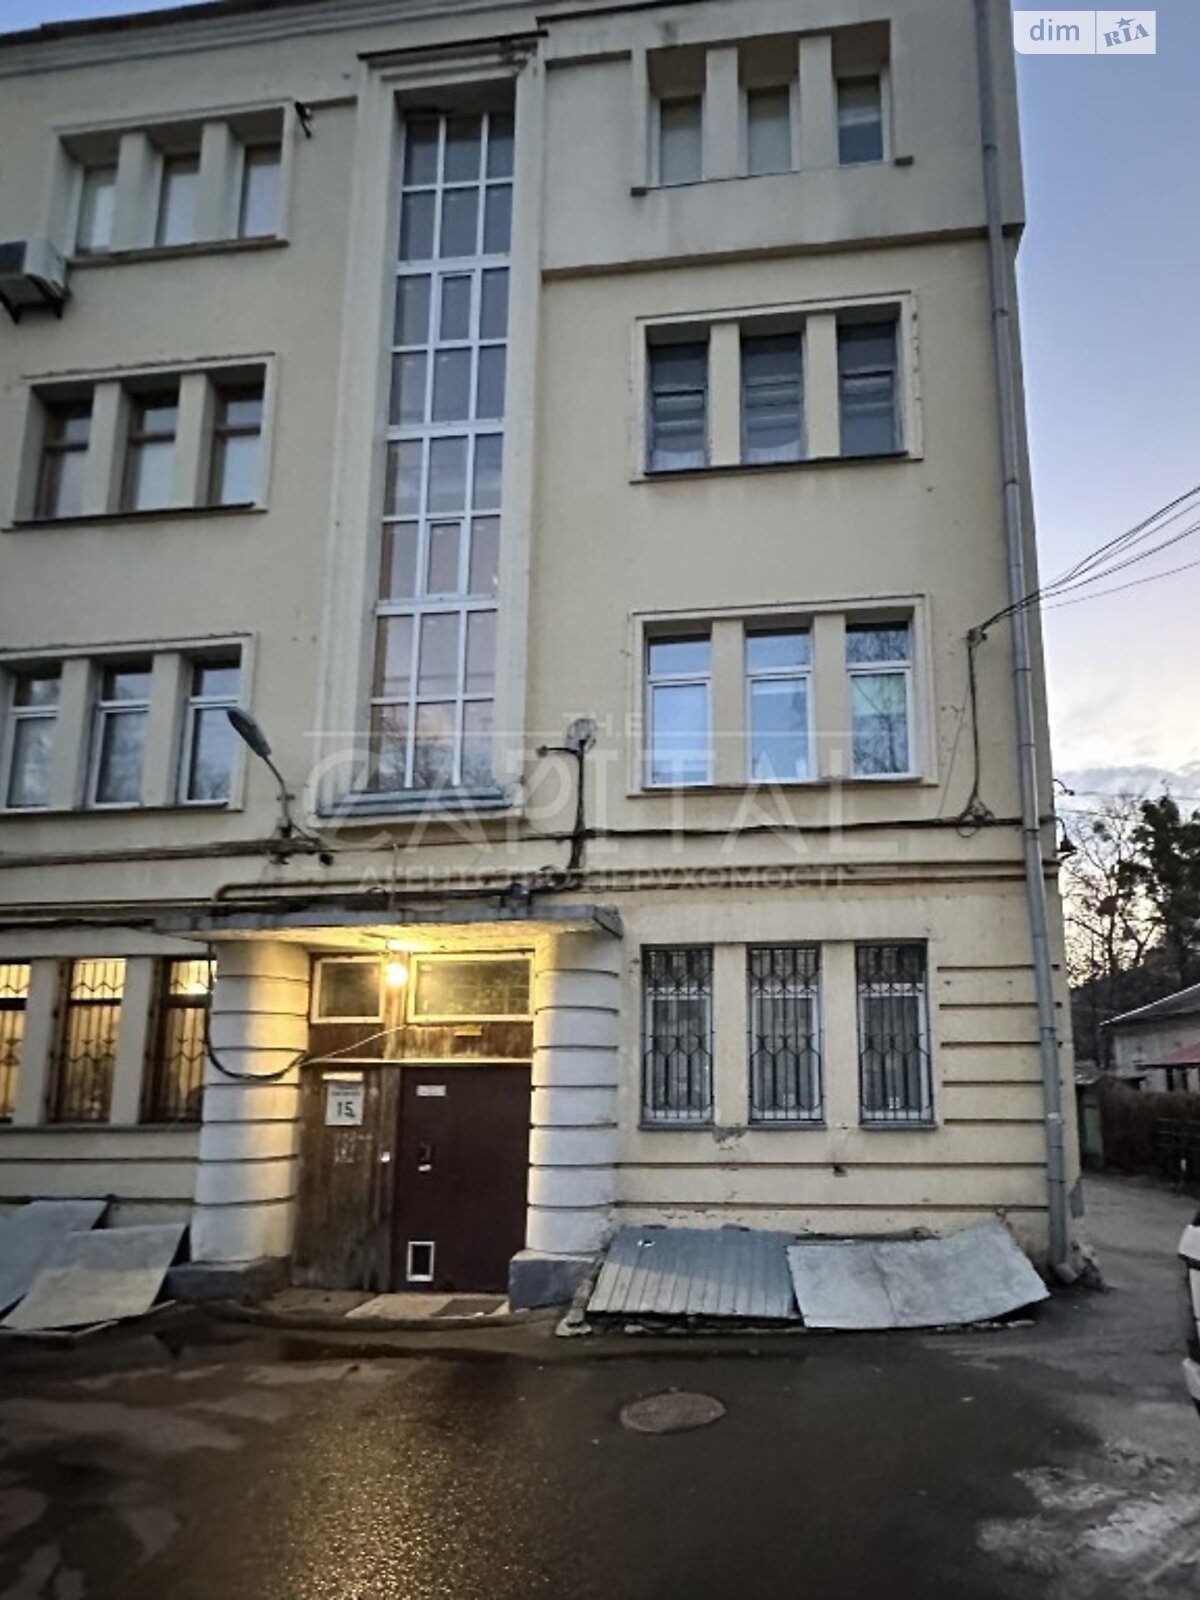 Офисное помещение на 200 кв.м. в Киеве фото 1